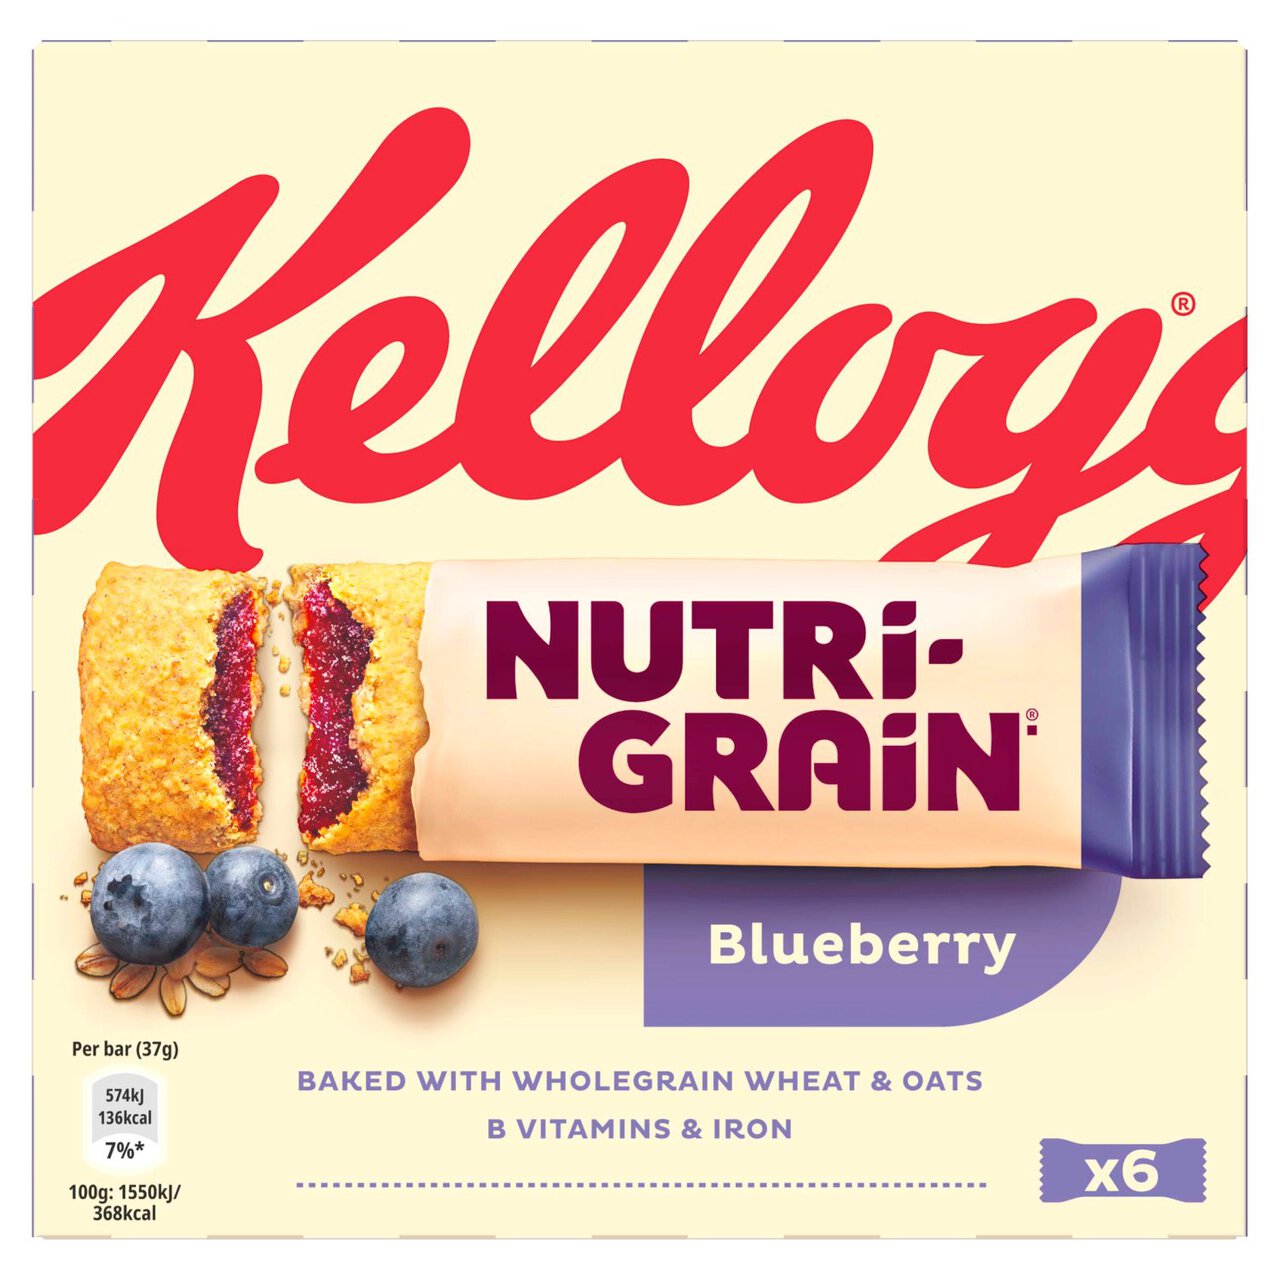 Kellogg's Nutrigrain Blueberry 6 per pack